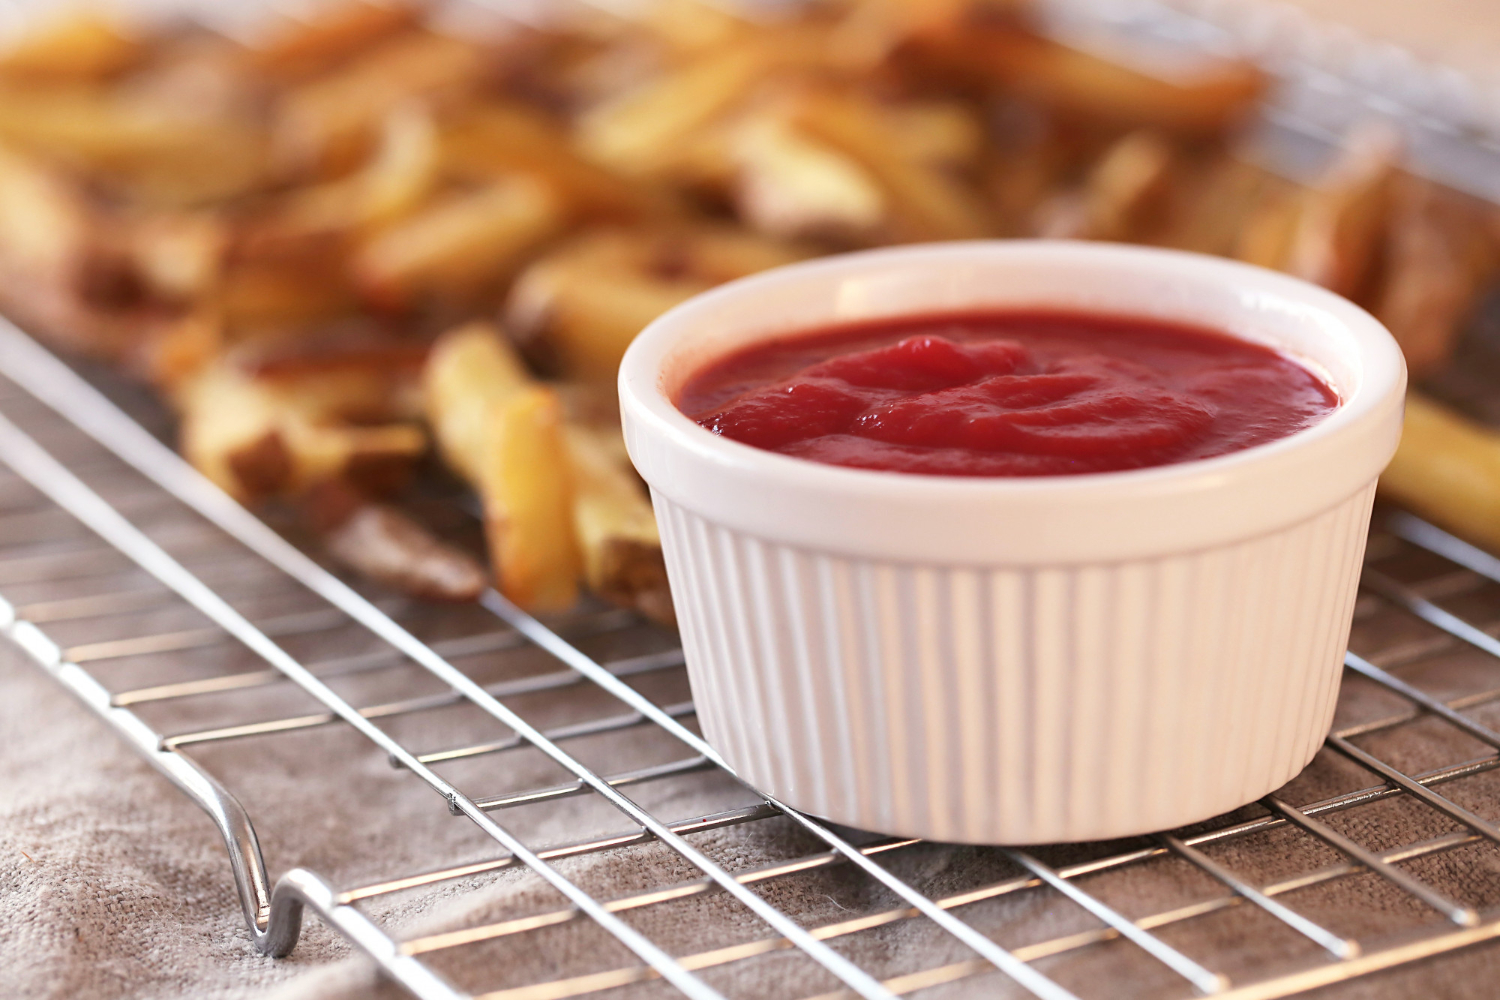 Saiba como preparar um delicioso ketchup de goiaba para inovar nas receitas